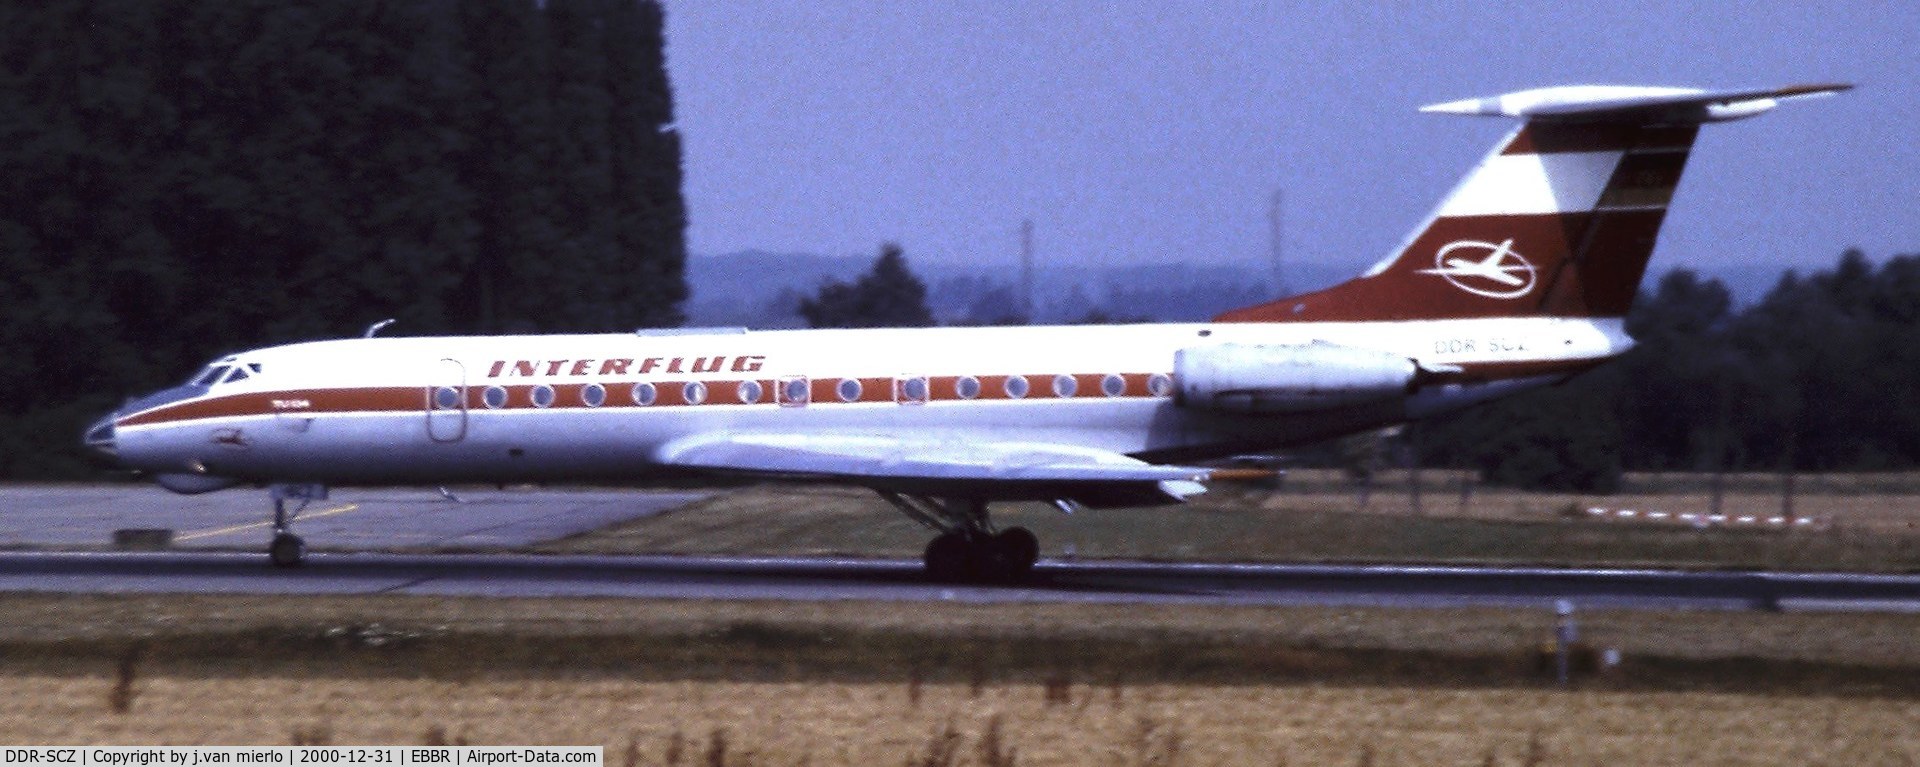 DDR-SCZ, 1969 Tupolev Tu-134K C/N 9350913, Landing at Brussels, Belgium '80s